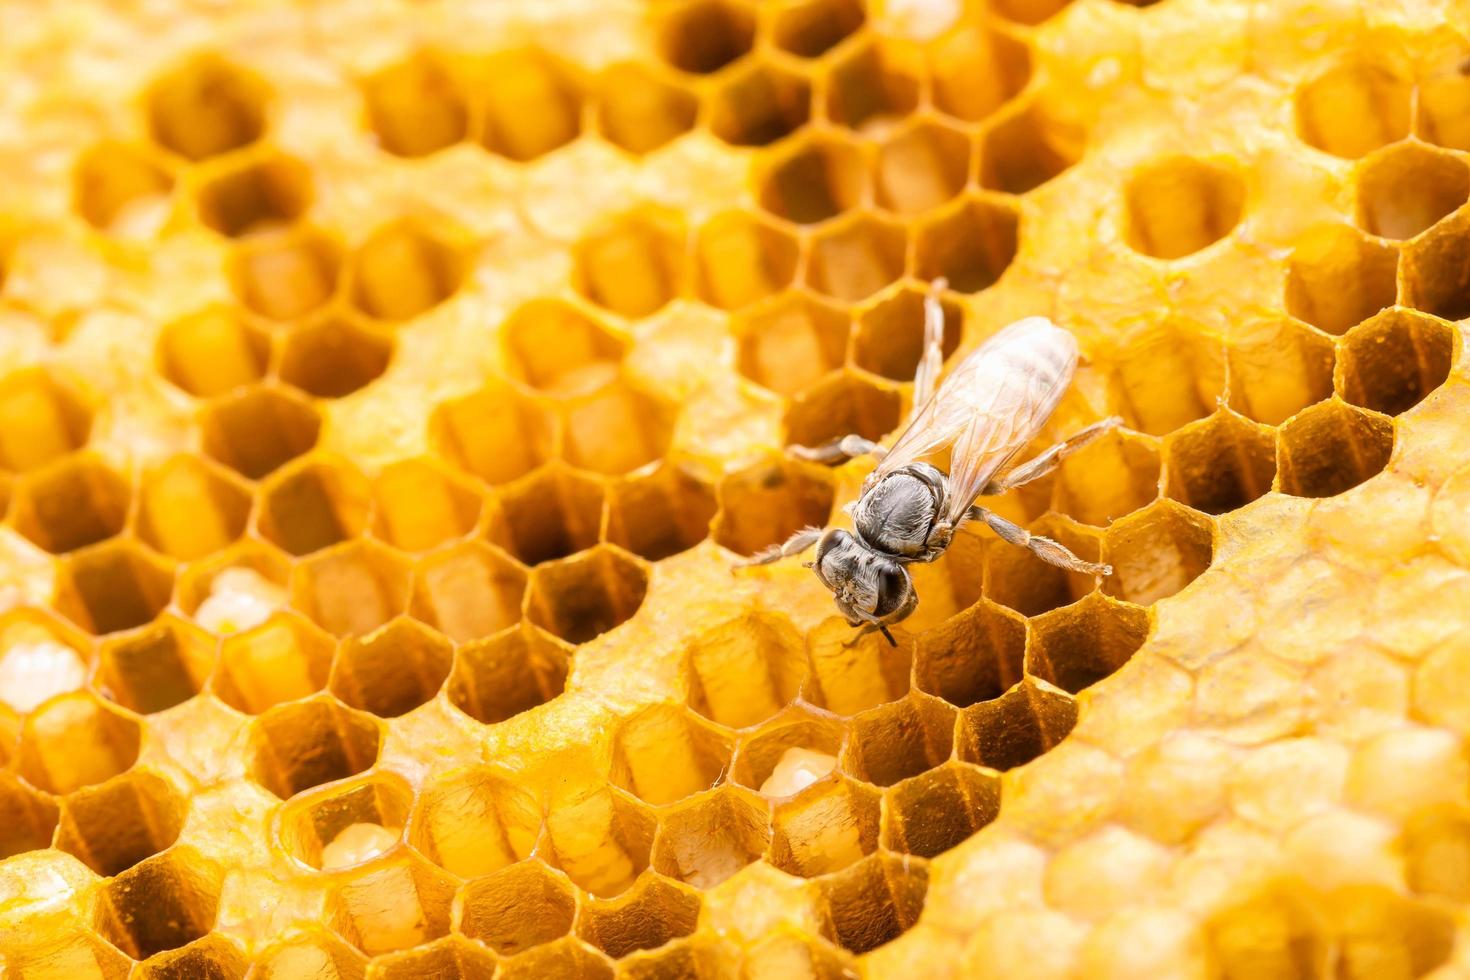 grupo de abelhas em sessão de estúdio de favo de mel. conceito de comida ou natureza foto